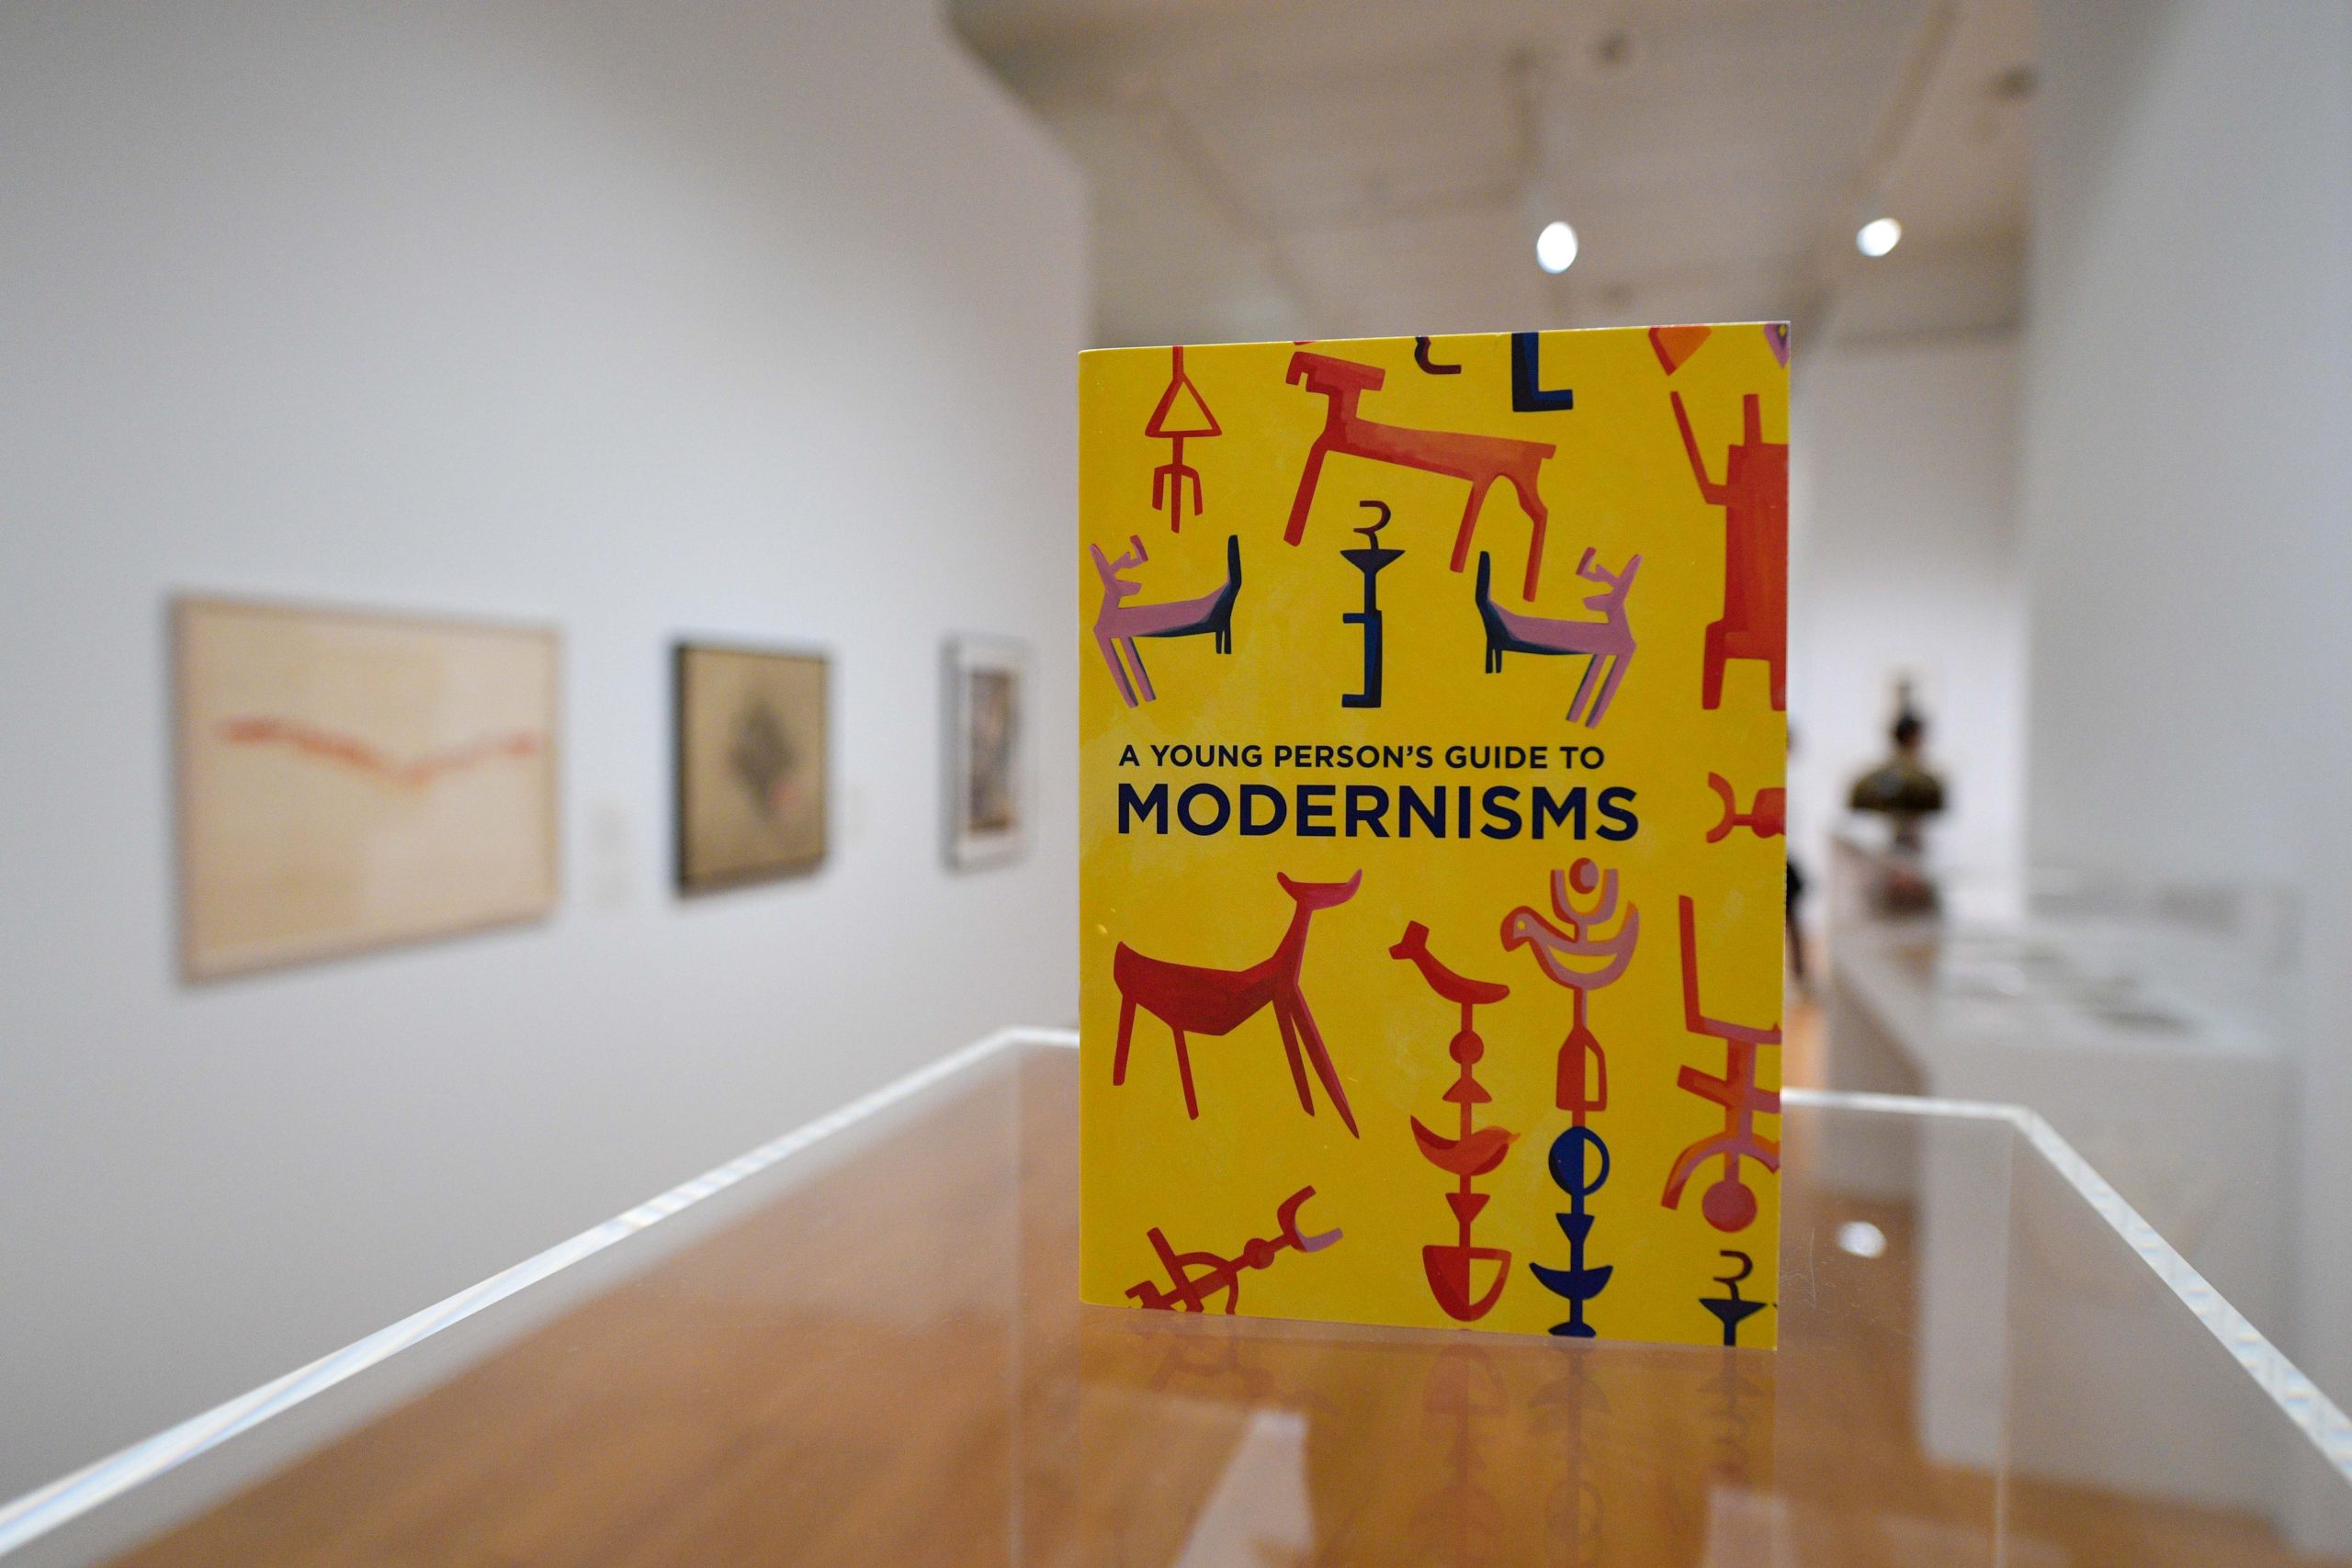 Art Gallery Event – Modernism